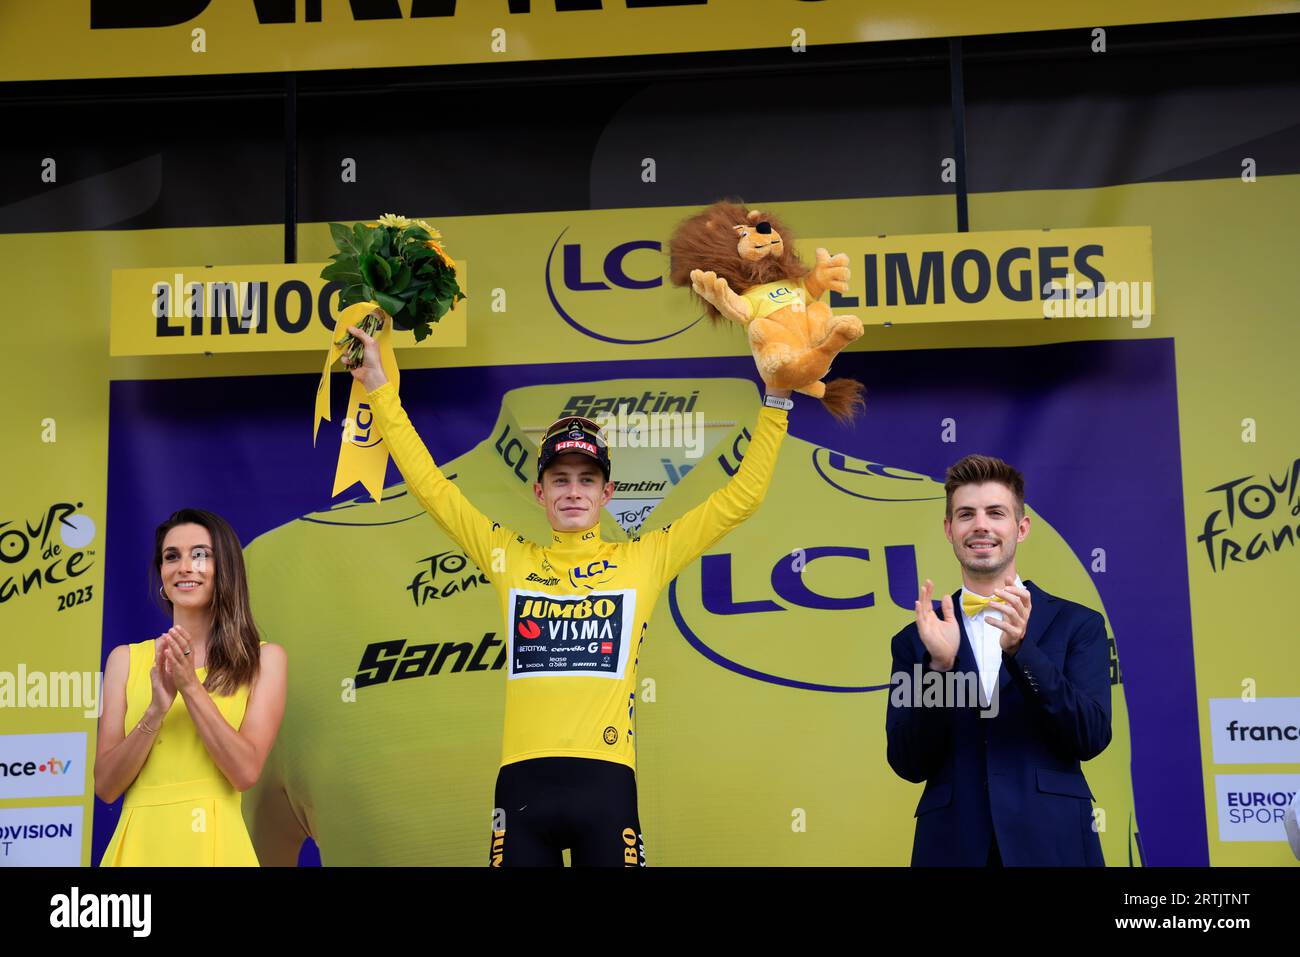 Jonas Vingegaard maglia gialla al traguardo dell'ottava tappa Libourne Limoges del Tour de France 2023. Salendo sul podio a Limoges Foto Stock